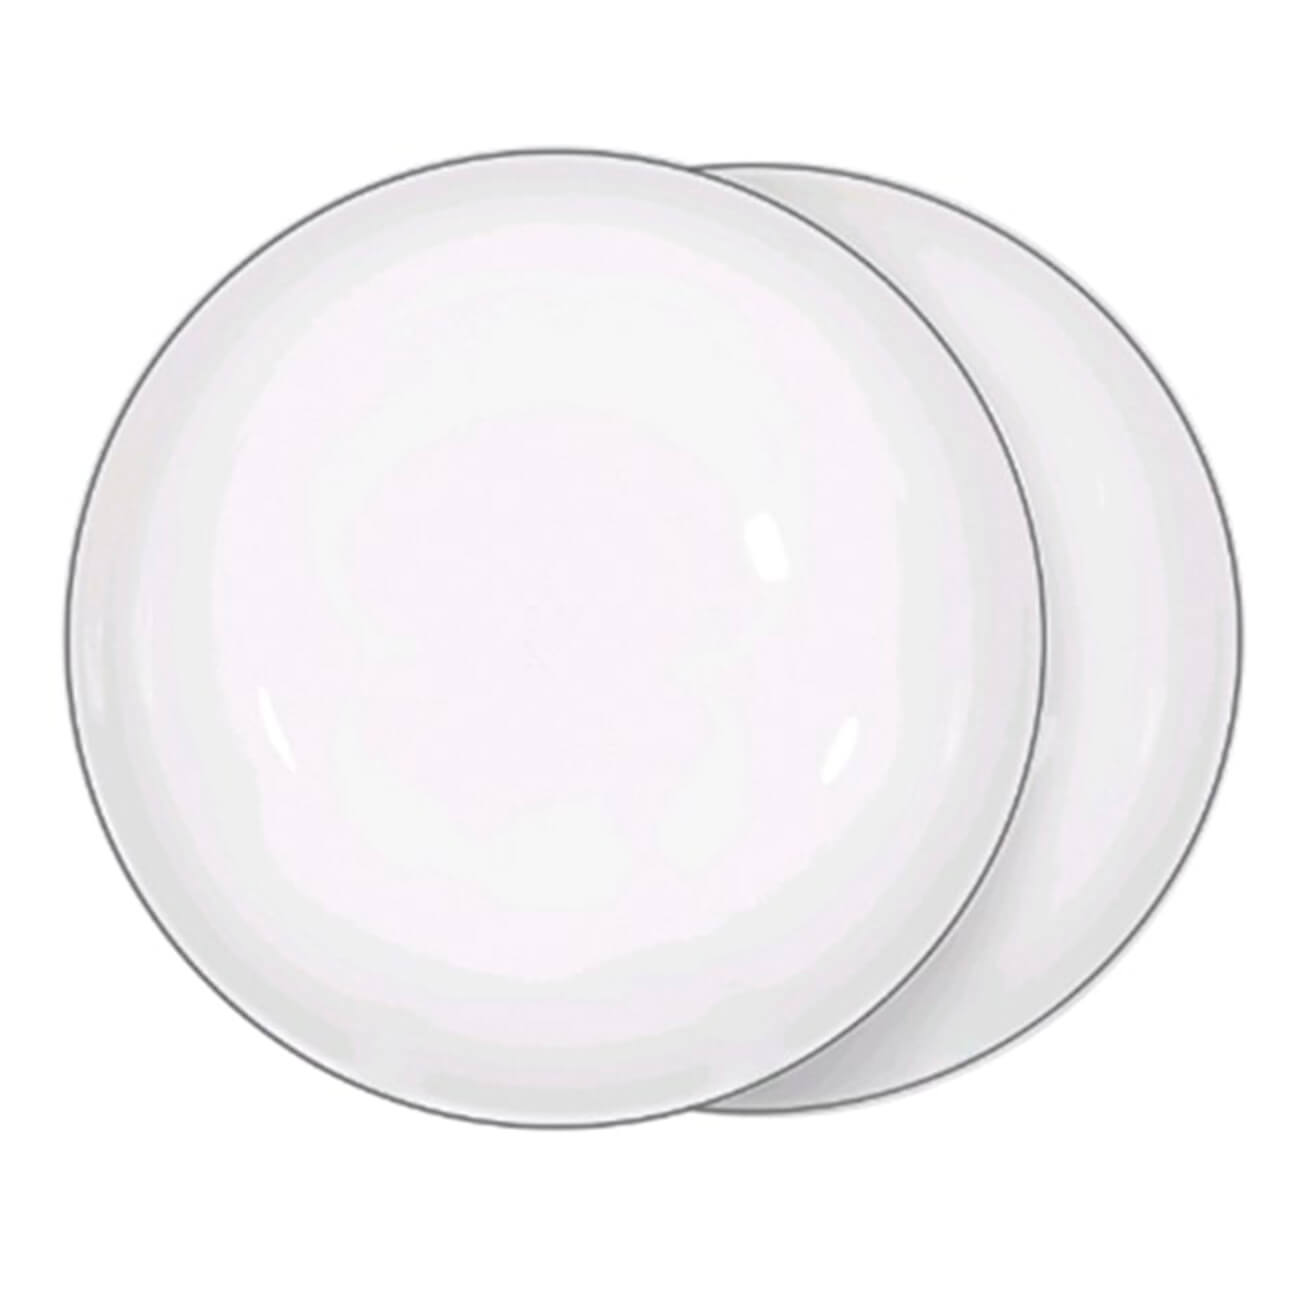 Тарелка суповая, 20х5 см, 2 шт, фарфор F, белая, Ideal silver тарелка суповая noritake рочестер 22 6 см